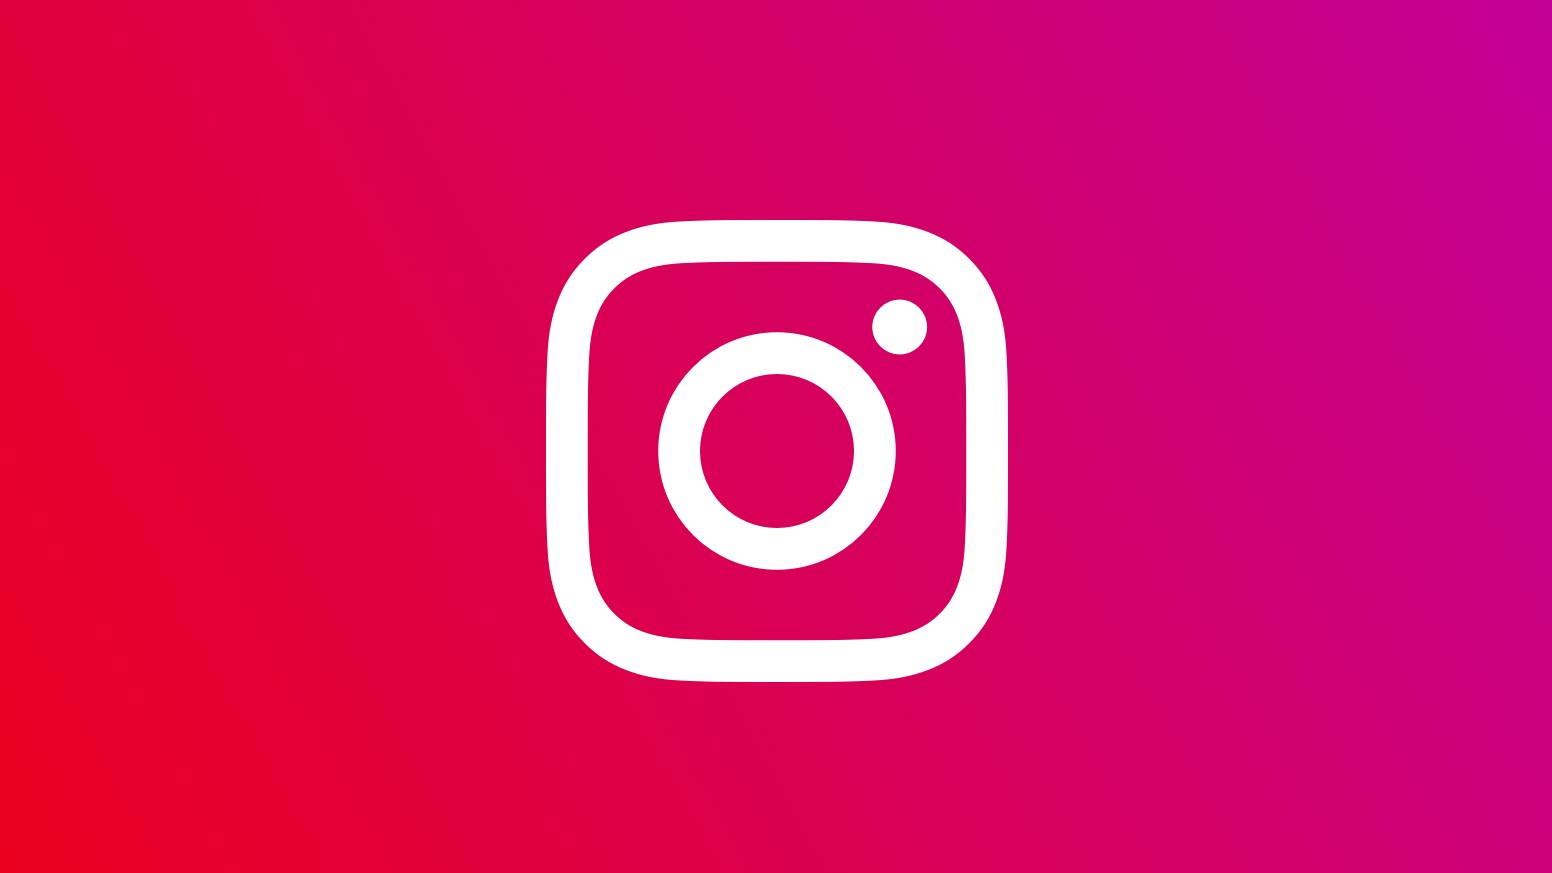 Instagram Lite, Android platformunda kullanıma sunuldu